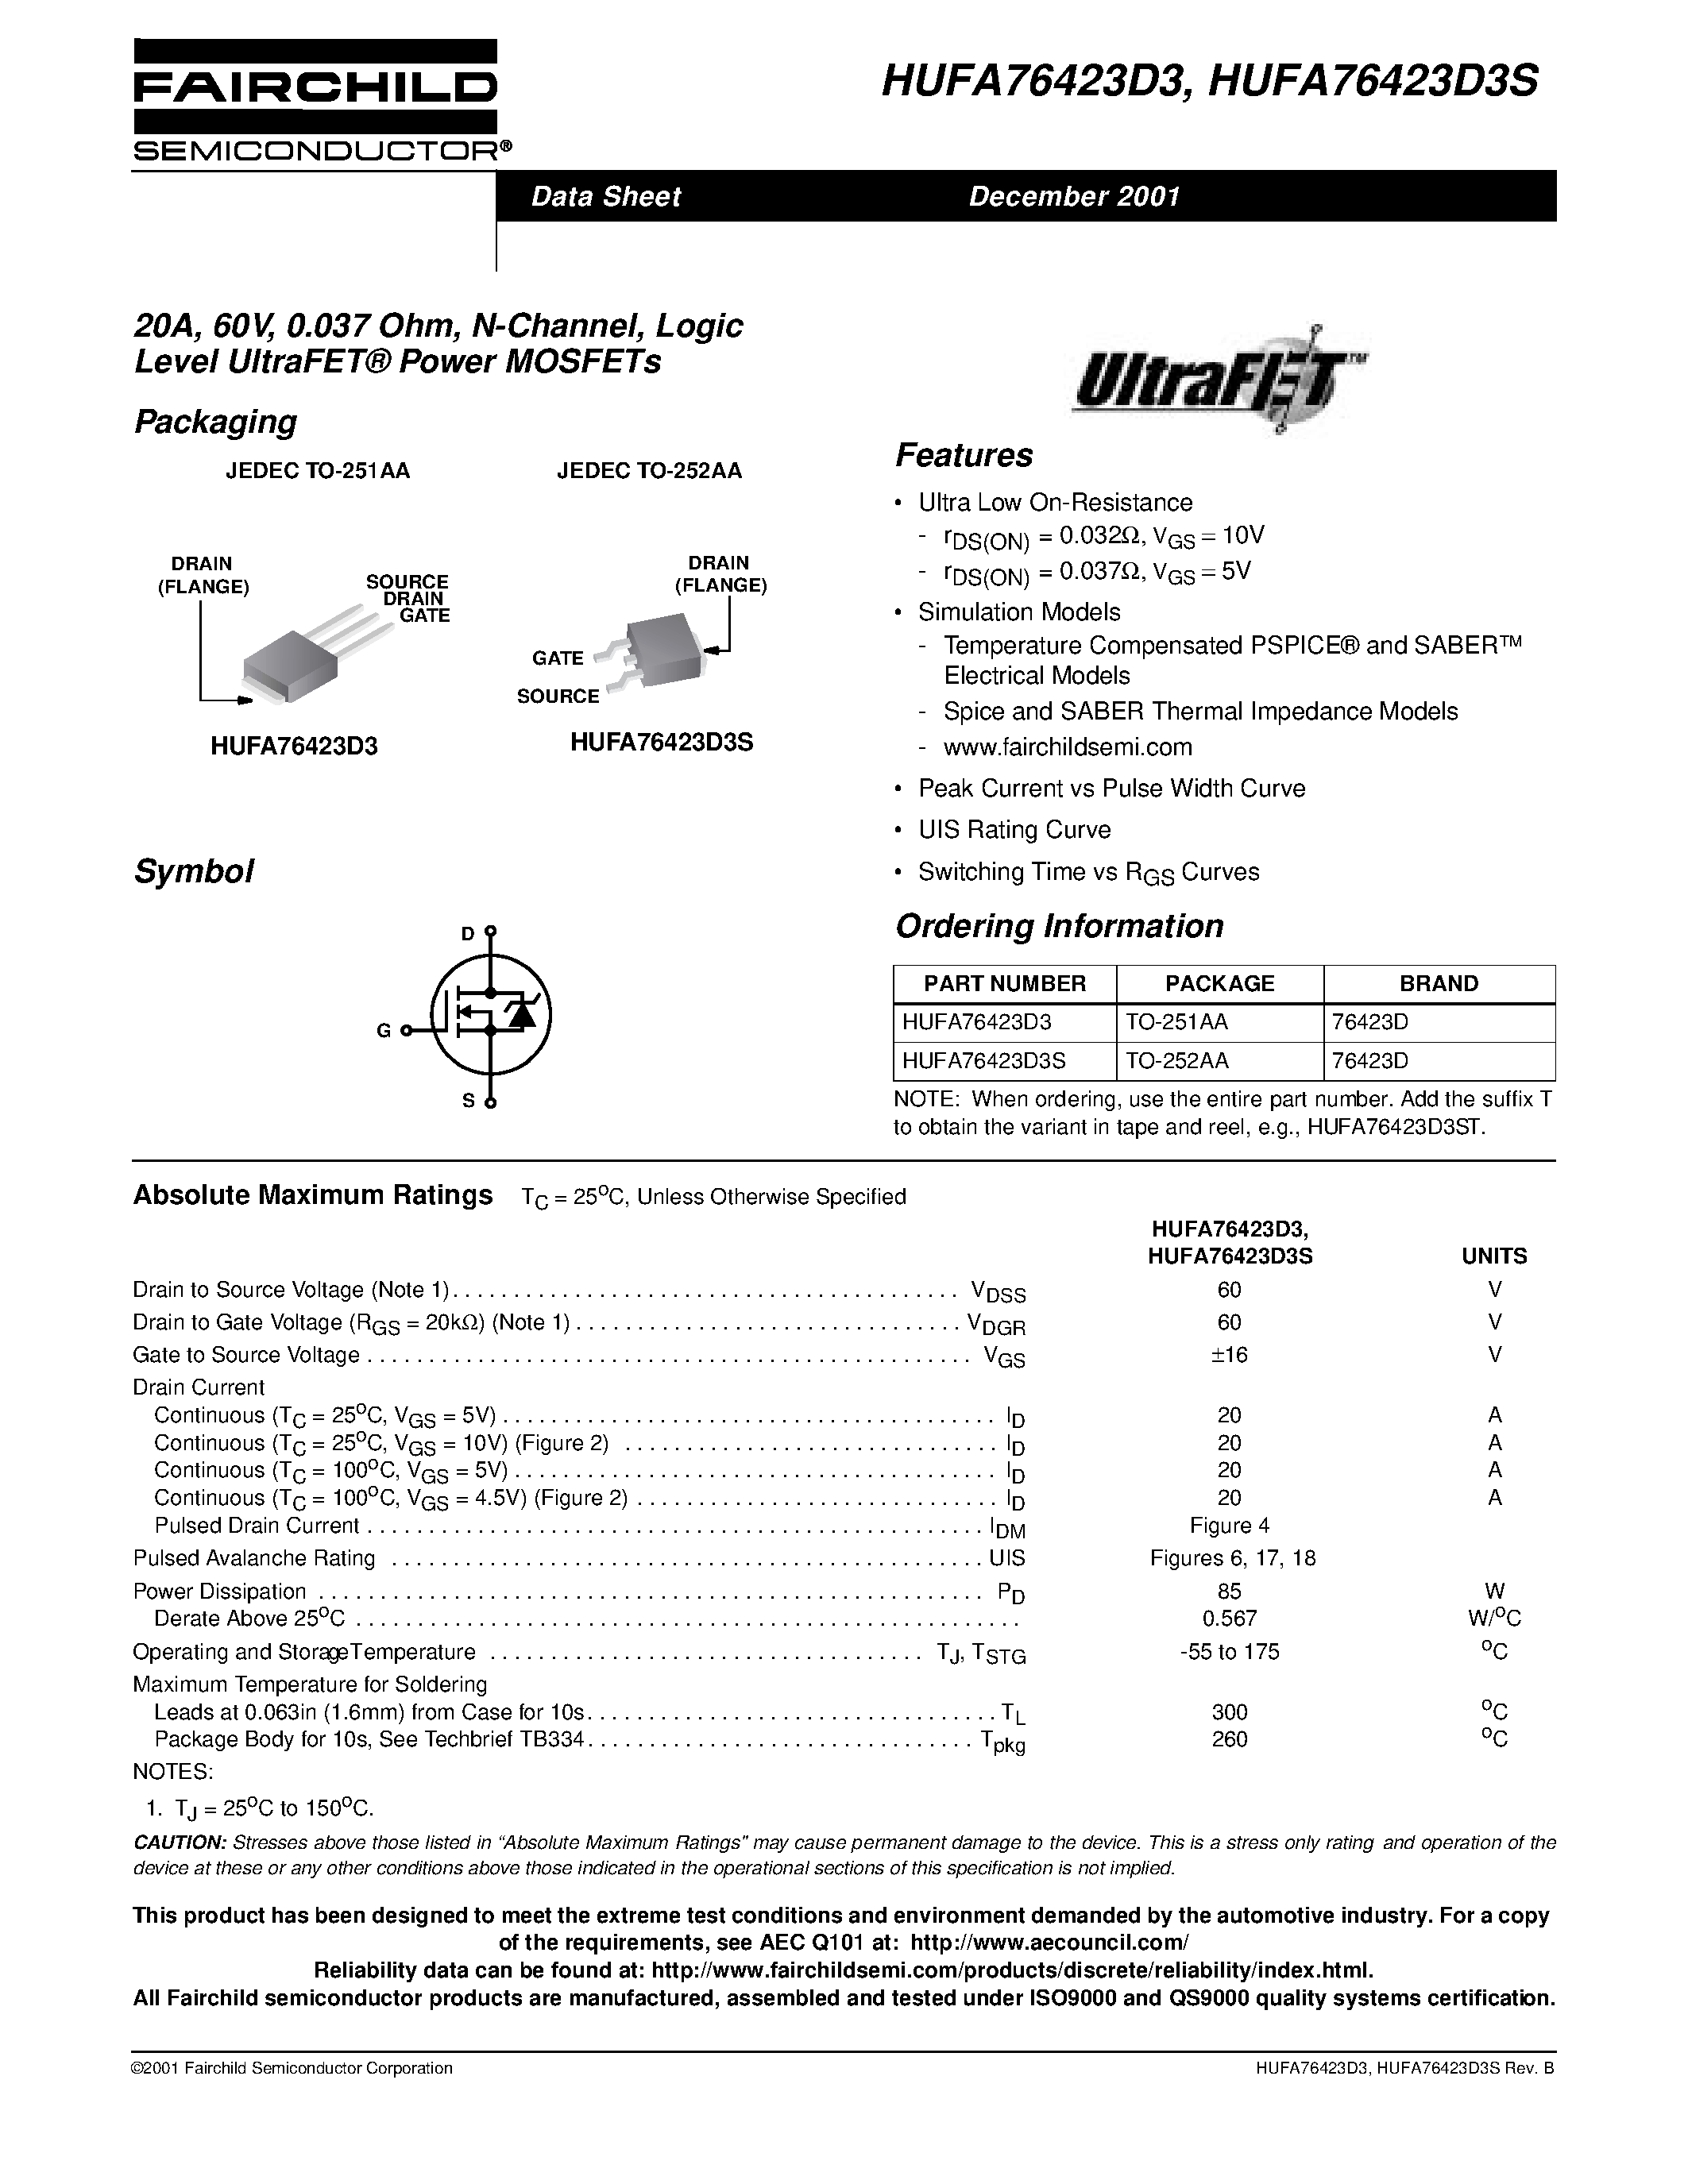 Даташит HUFA76423D3 - 20A/ 60V/ 0.037 Ohm/ N-Channel/ Logic Level UltraFET Power MOSFETs страница 1